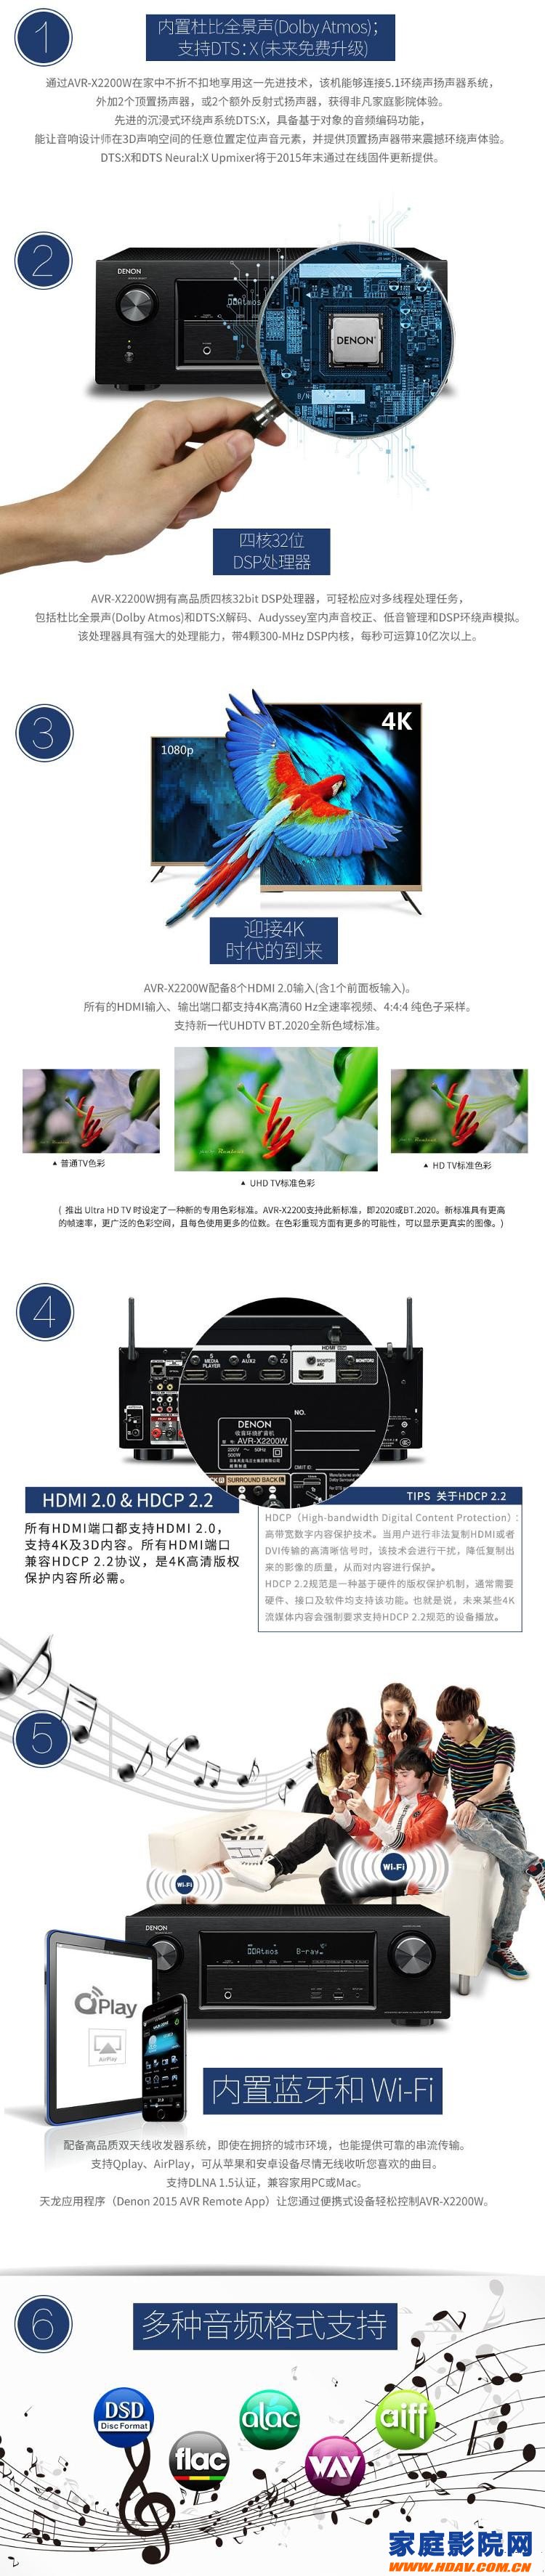 天龙如期发布AVR-X2200W对应DTS:X解码新固件(图3)